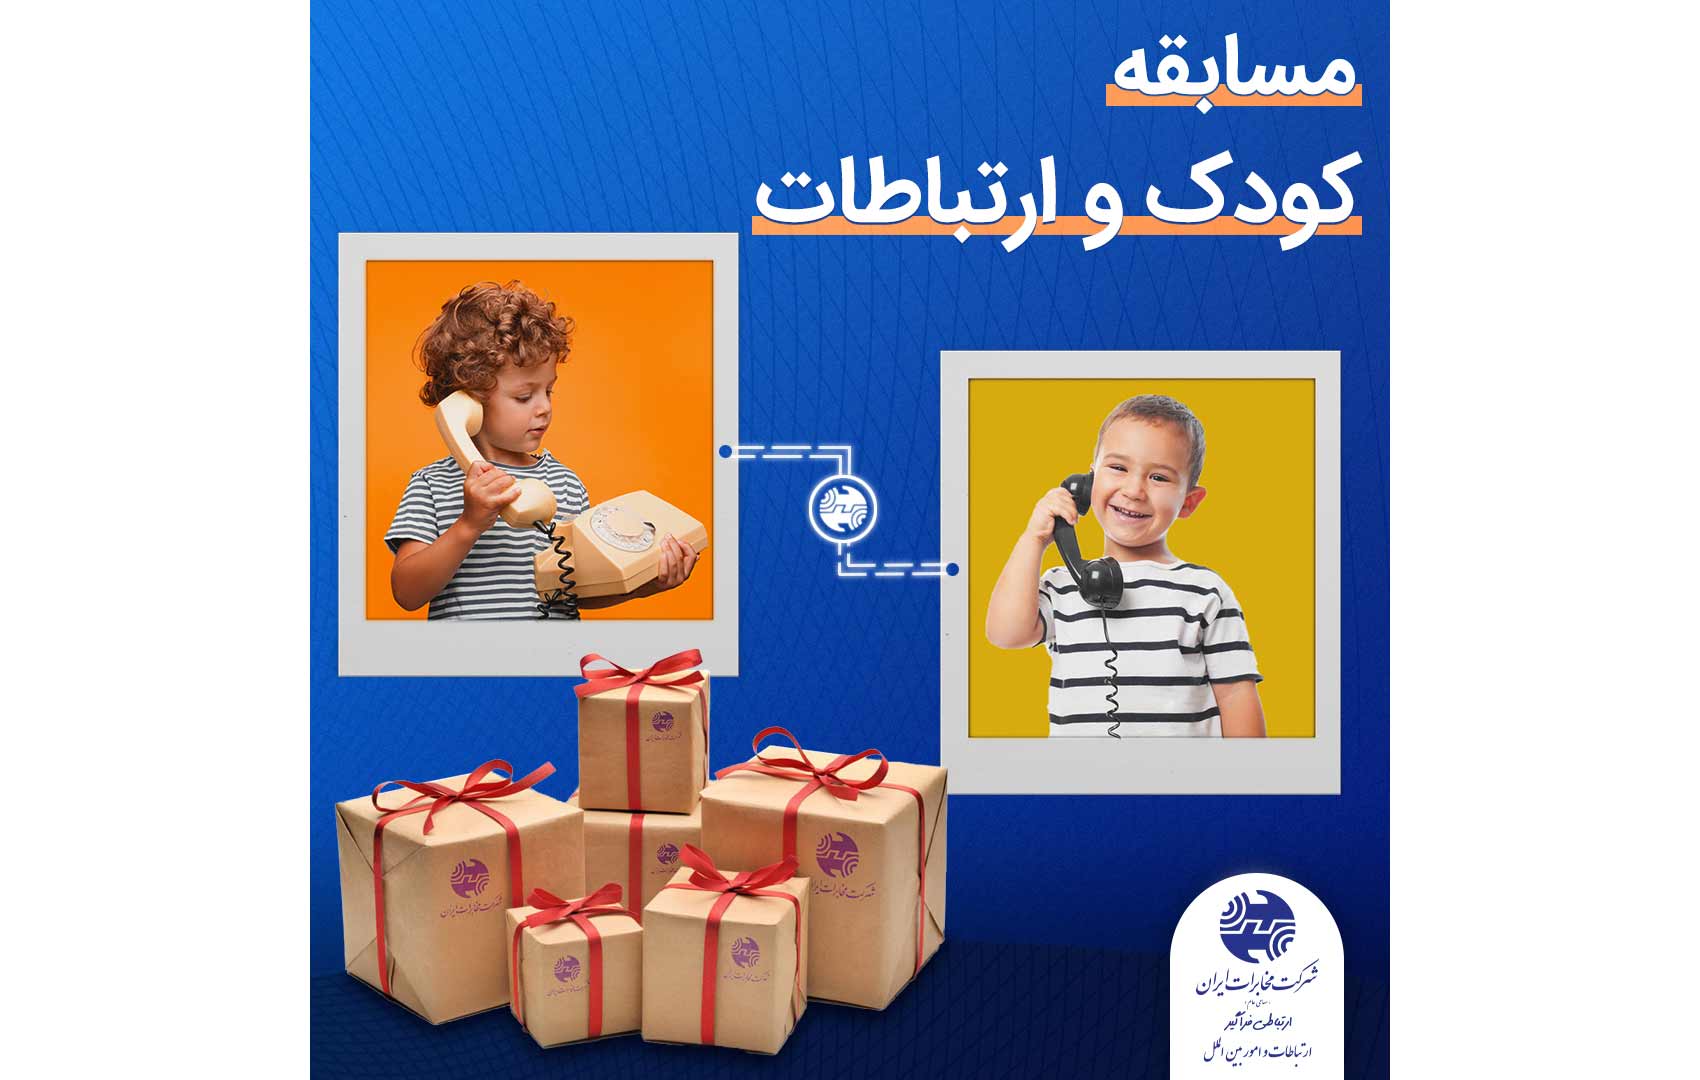 برگزاری مسابقه عکاسی کودک و ارتباطات به مناسبت روز جهانی کودک در صفحه اینستاگرامی مخابرات منطقه فارس